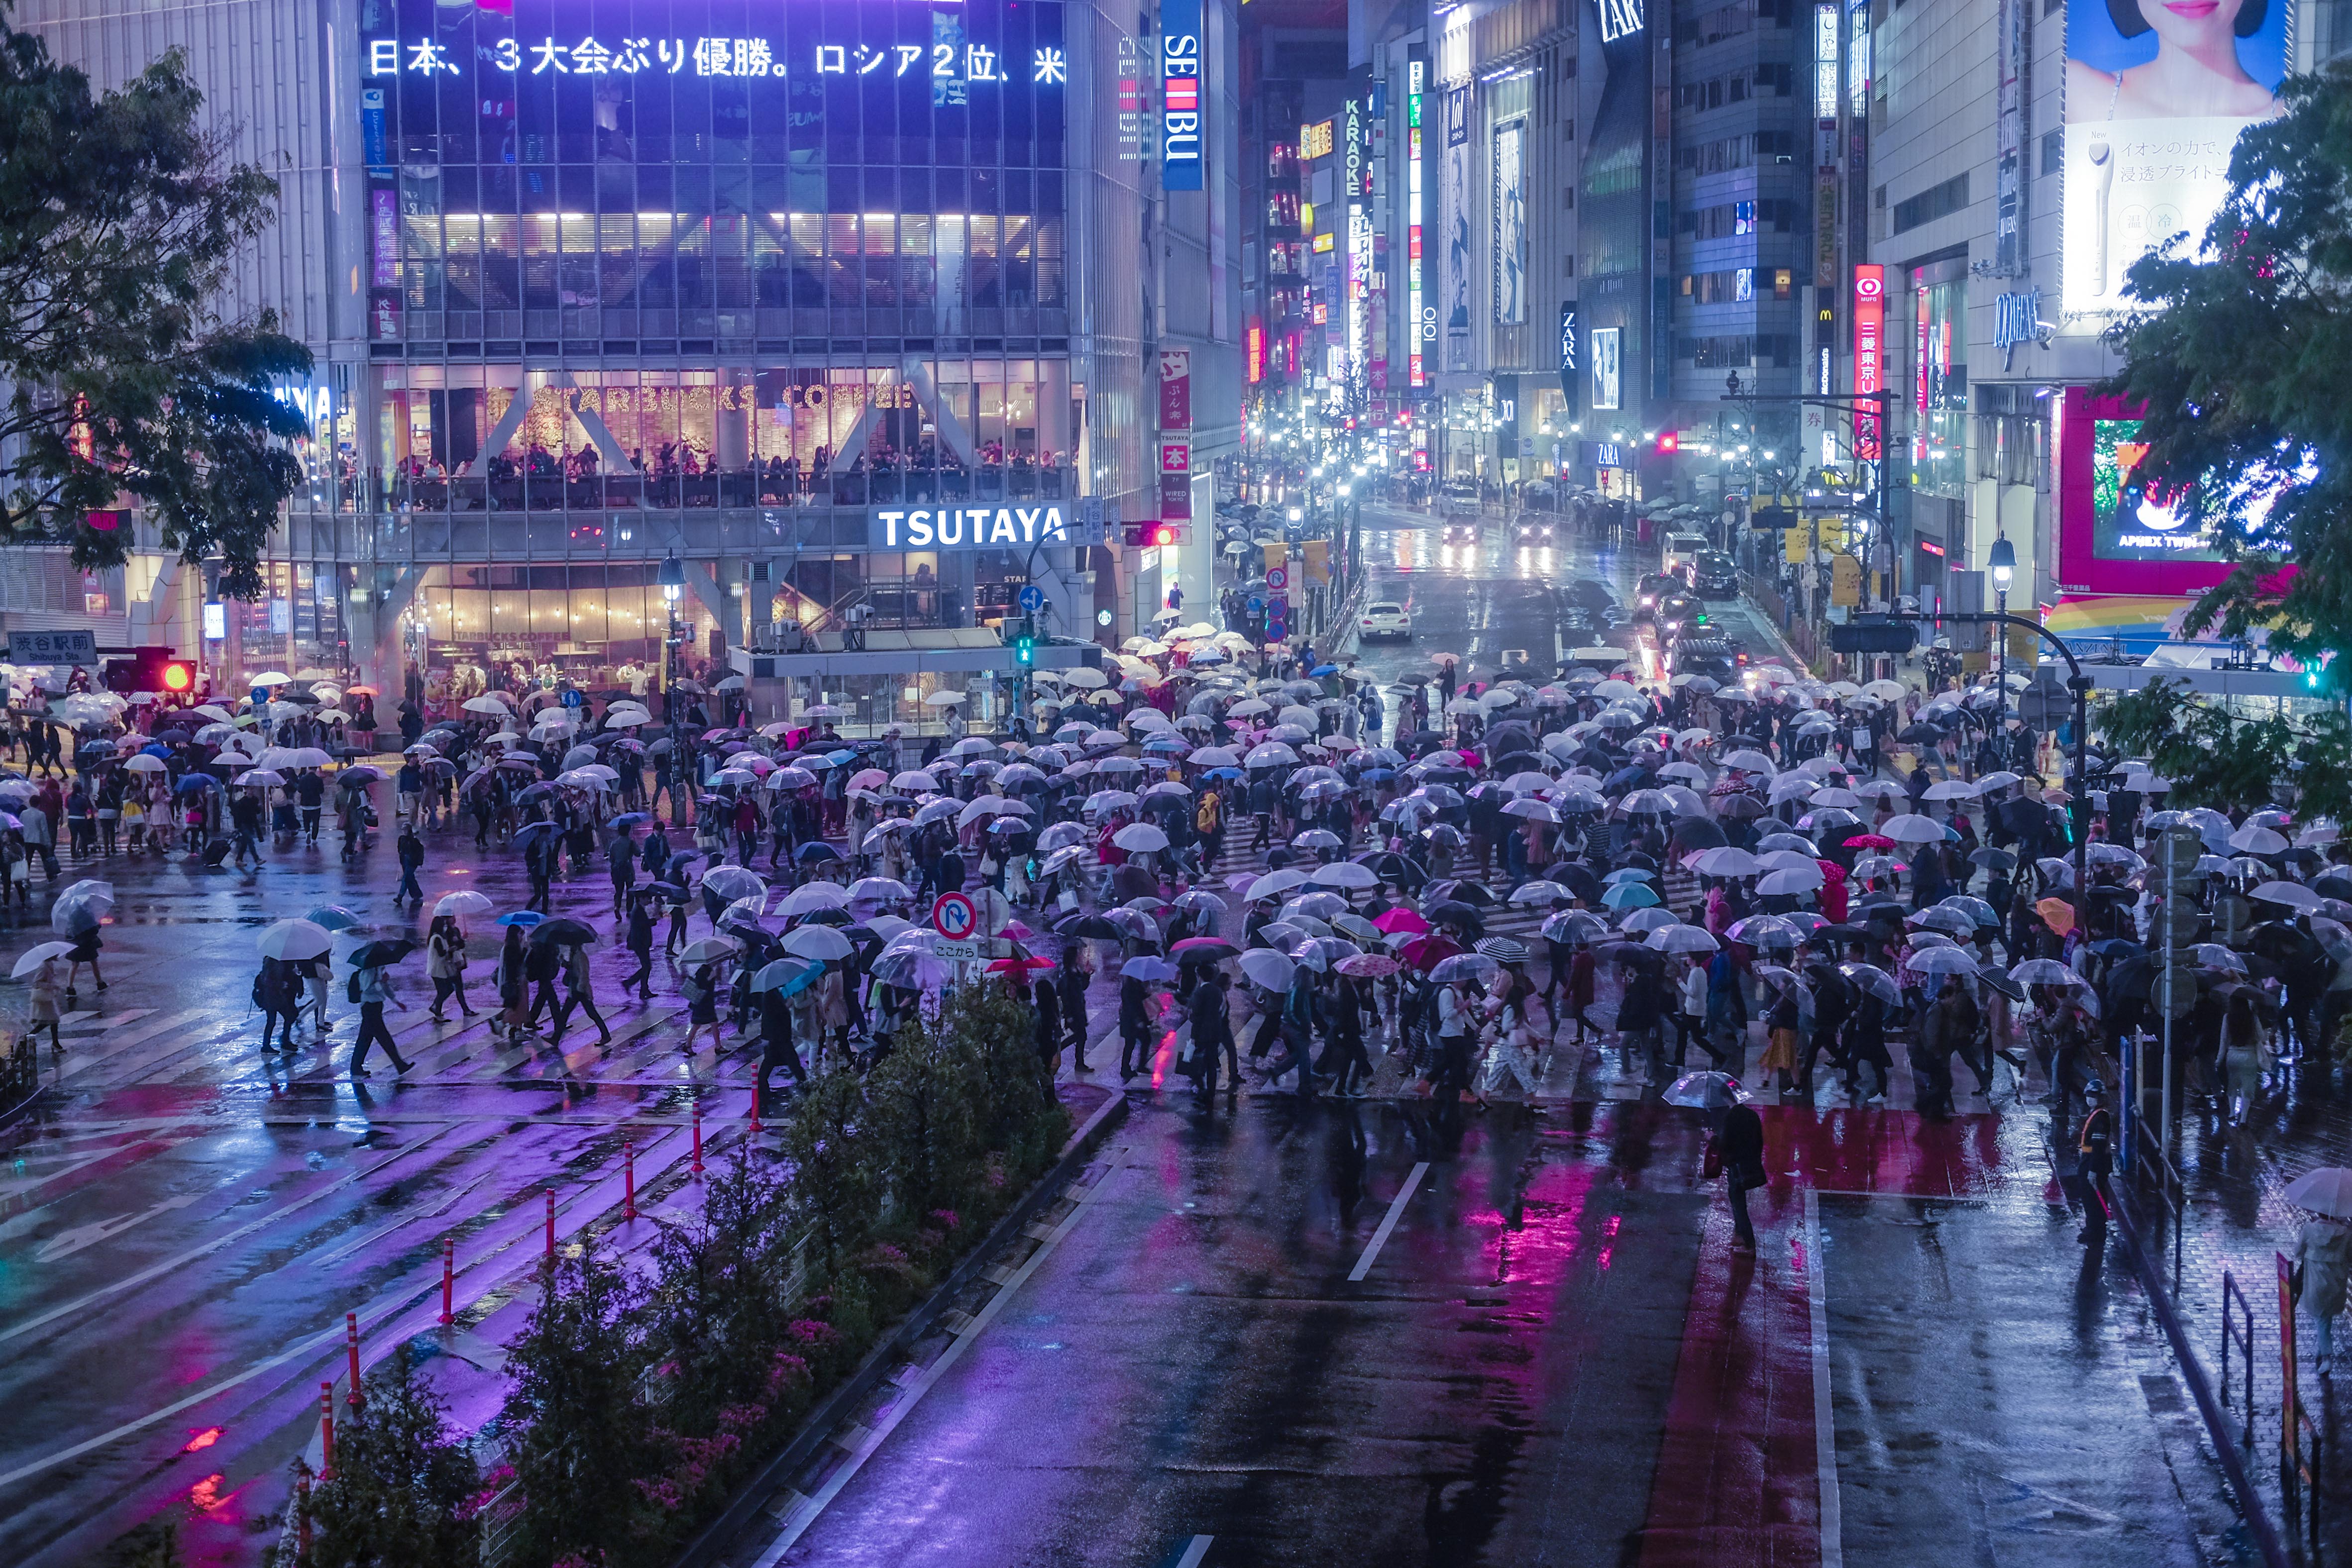 人们在夜晚穿过著名的涩谷十字路口